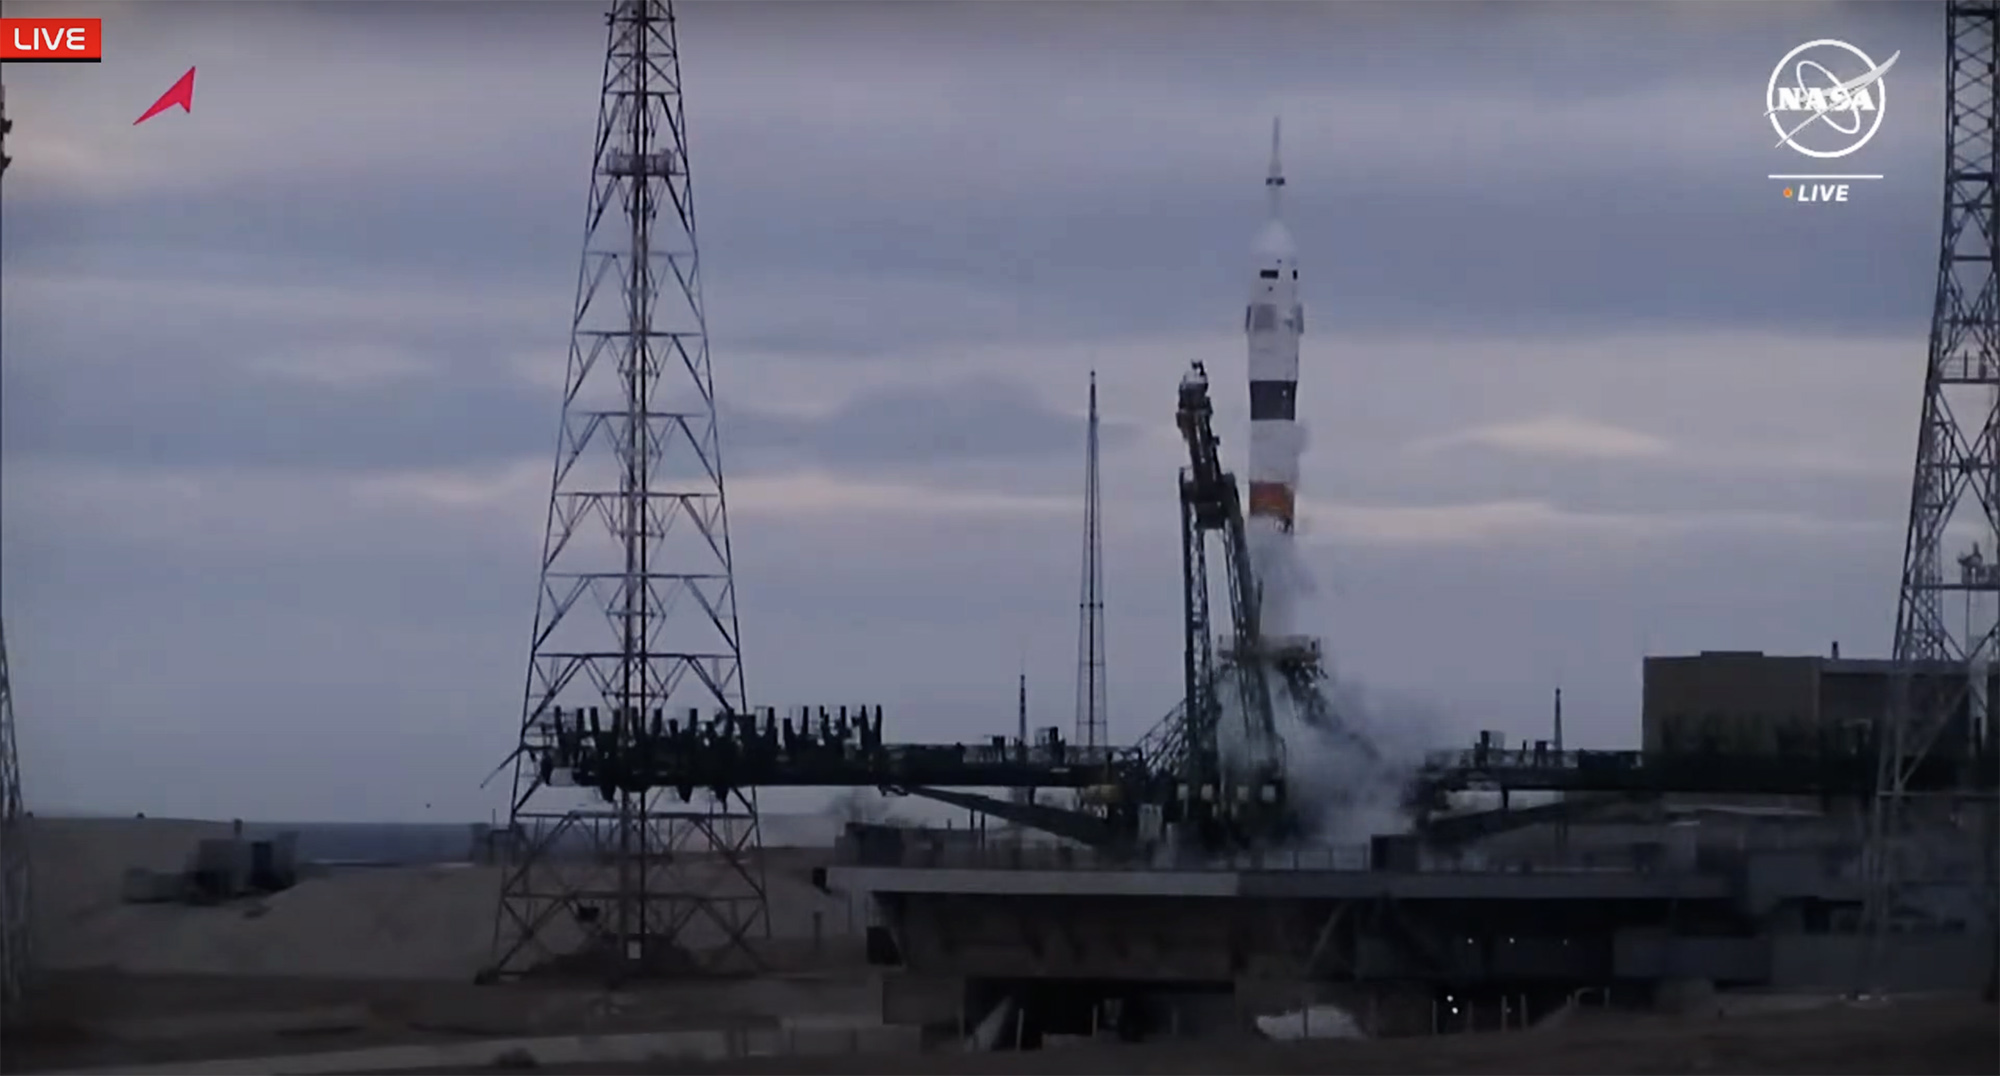 Dramatisch, als der Start einer russischen Sojus-Raumsonde 20 Sekunden vor dem Start zur Internationalen Raumstation (ISS) abgebrochen wurde und die Besatzung einer russischen, einer weißrussischen und einer amerikanischen Raumsonde sicher evakuiert wurde.